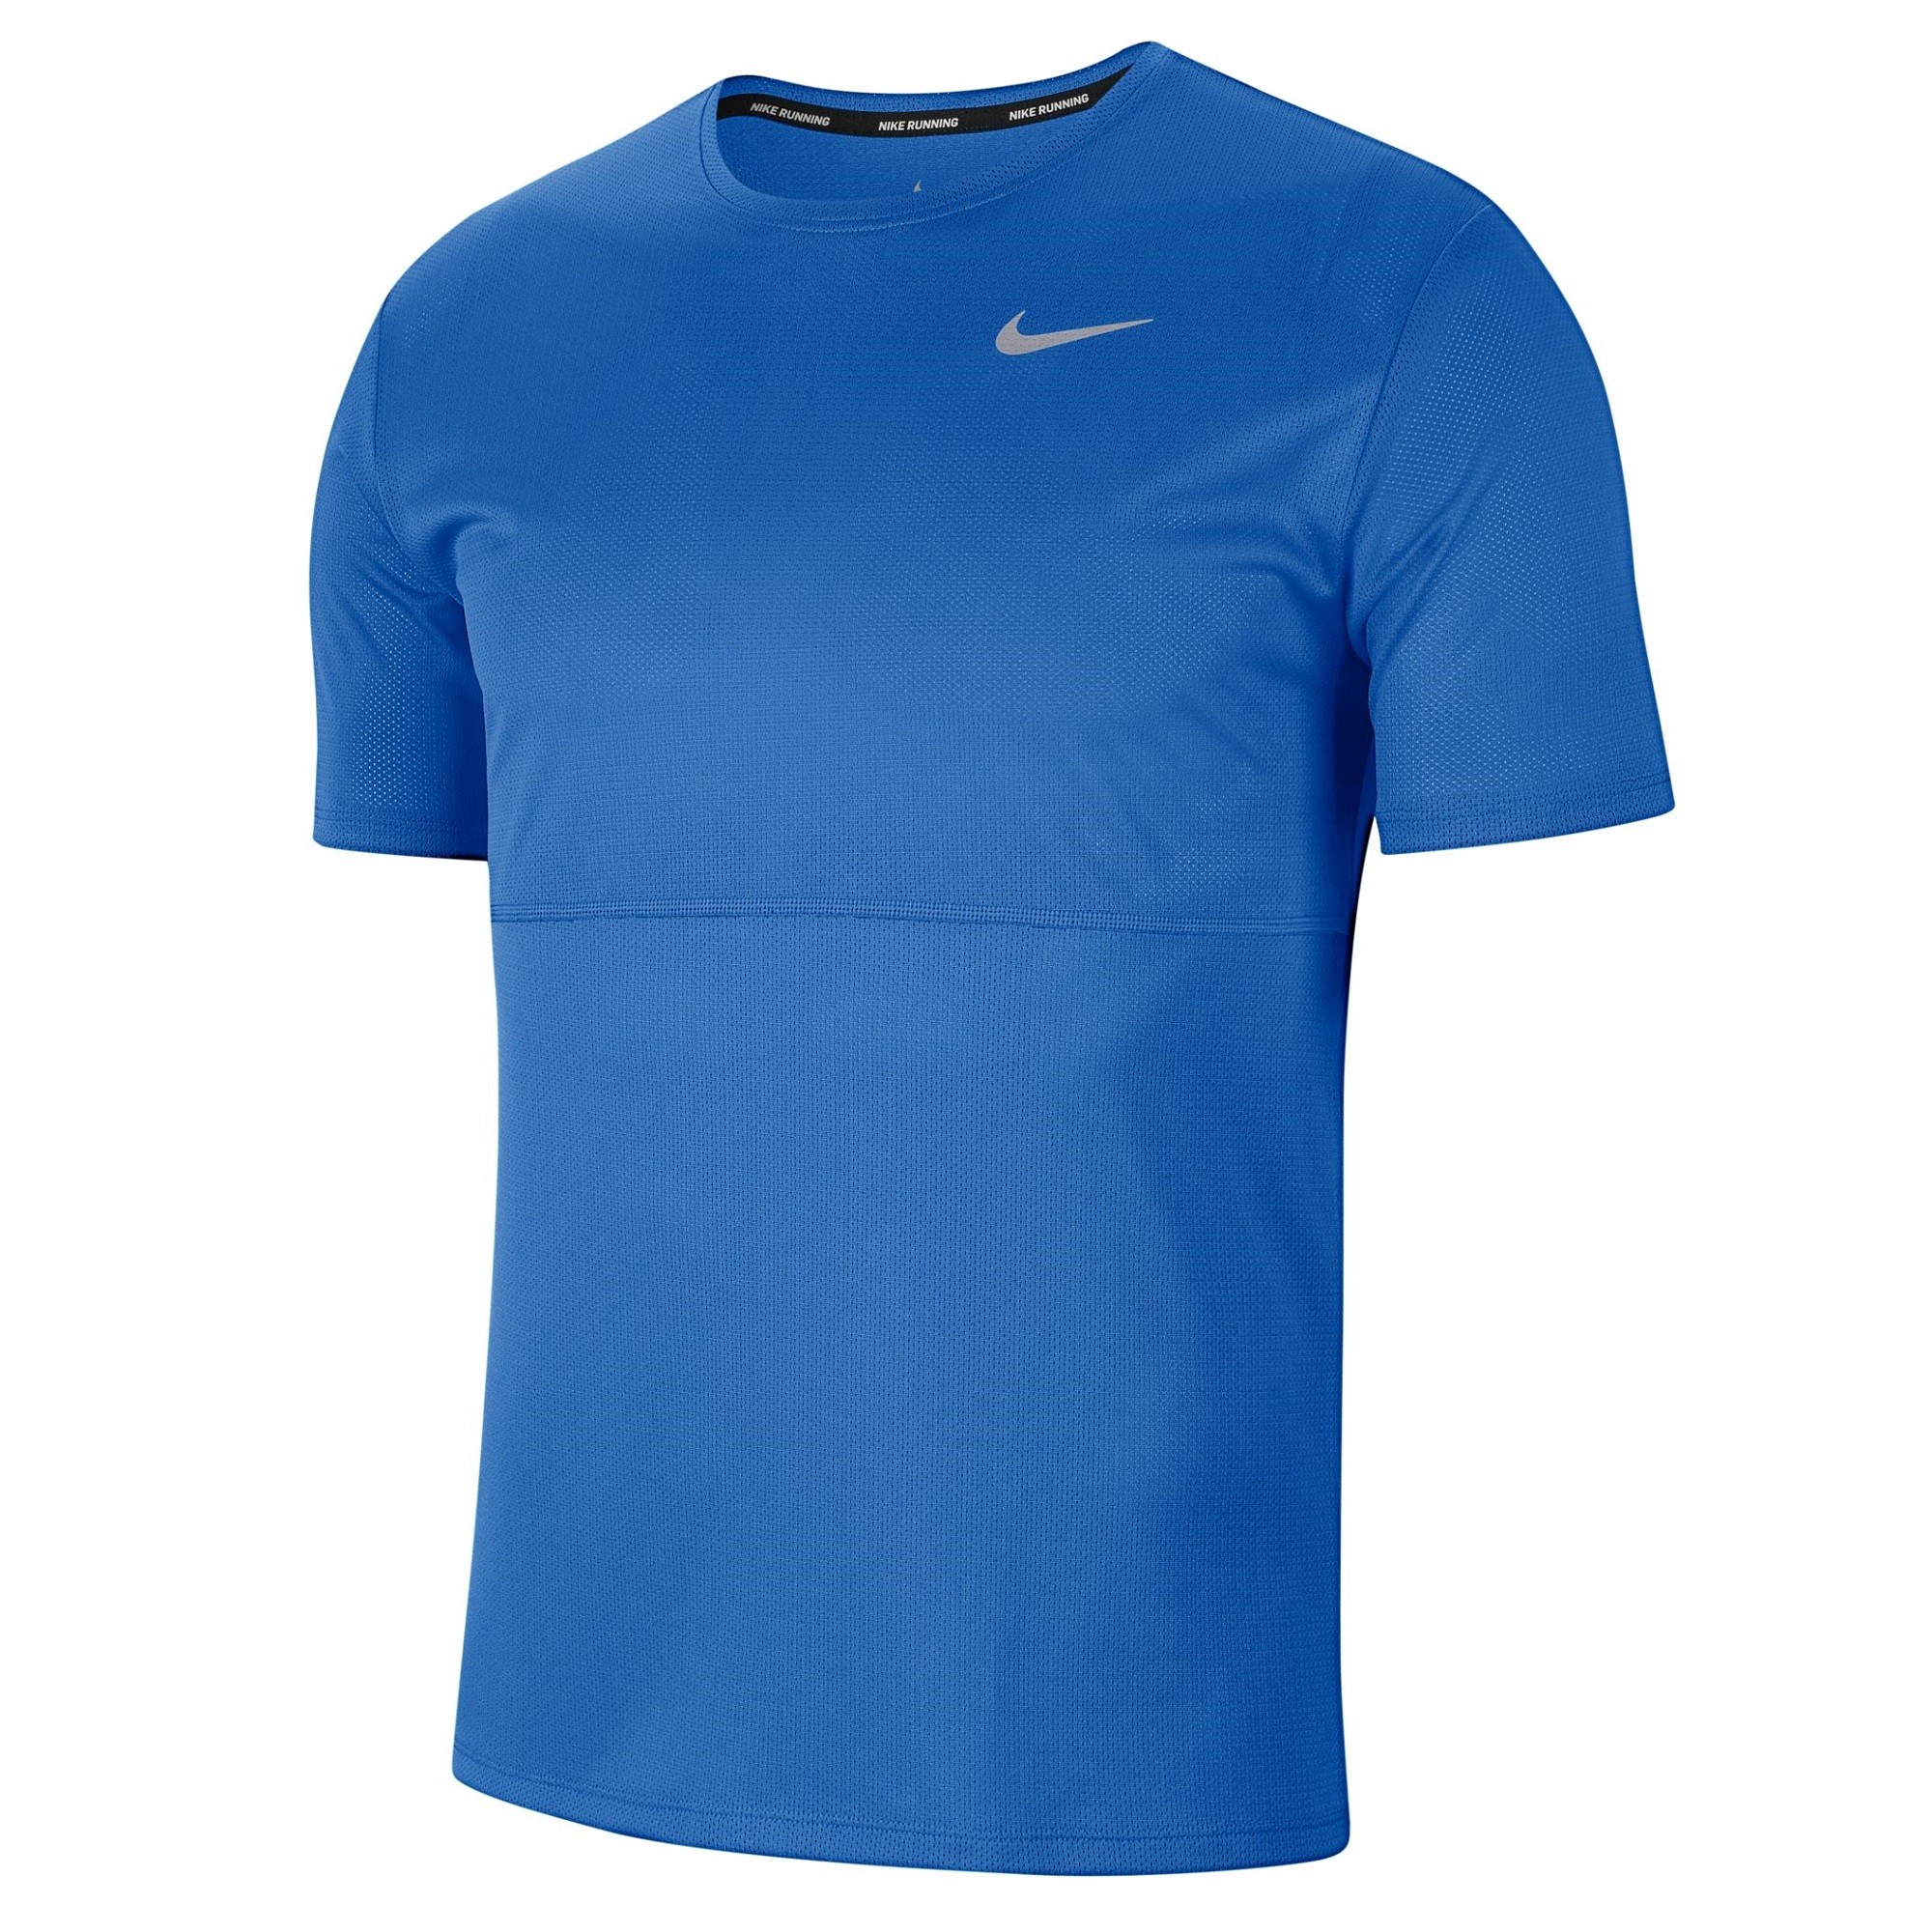 Camiseta Nike Breathe Running 402 - Deportes Manzanedo